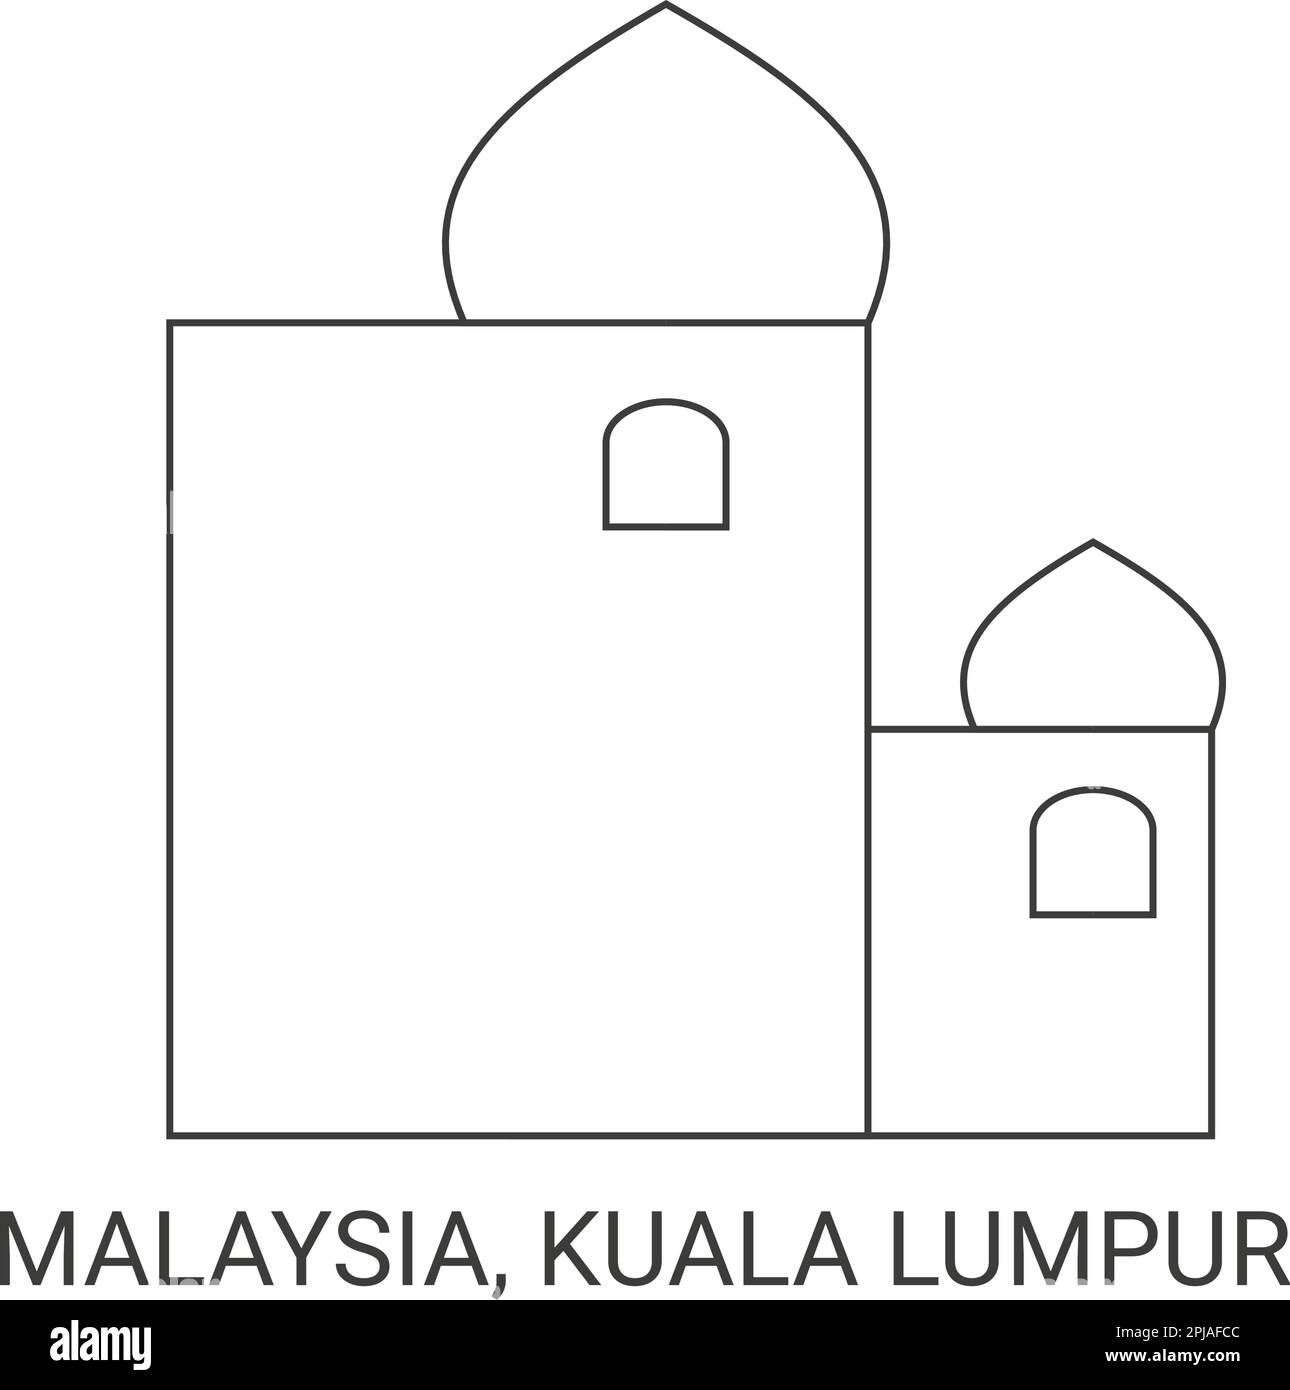 Malaysia, Kuala Lumpur, travel landmark vector illustration Stock Vector